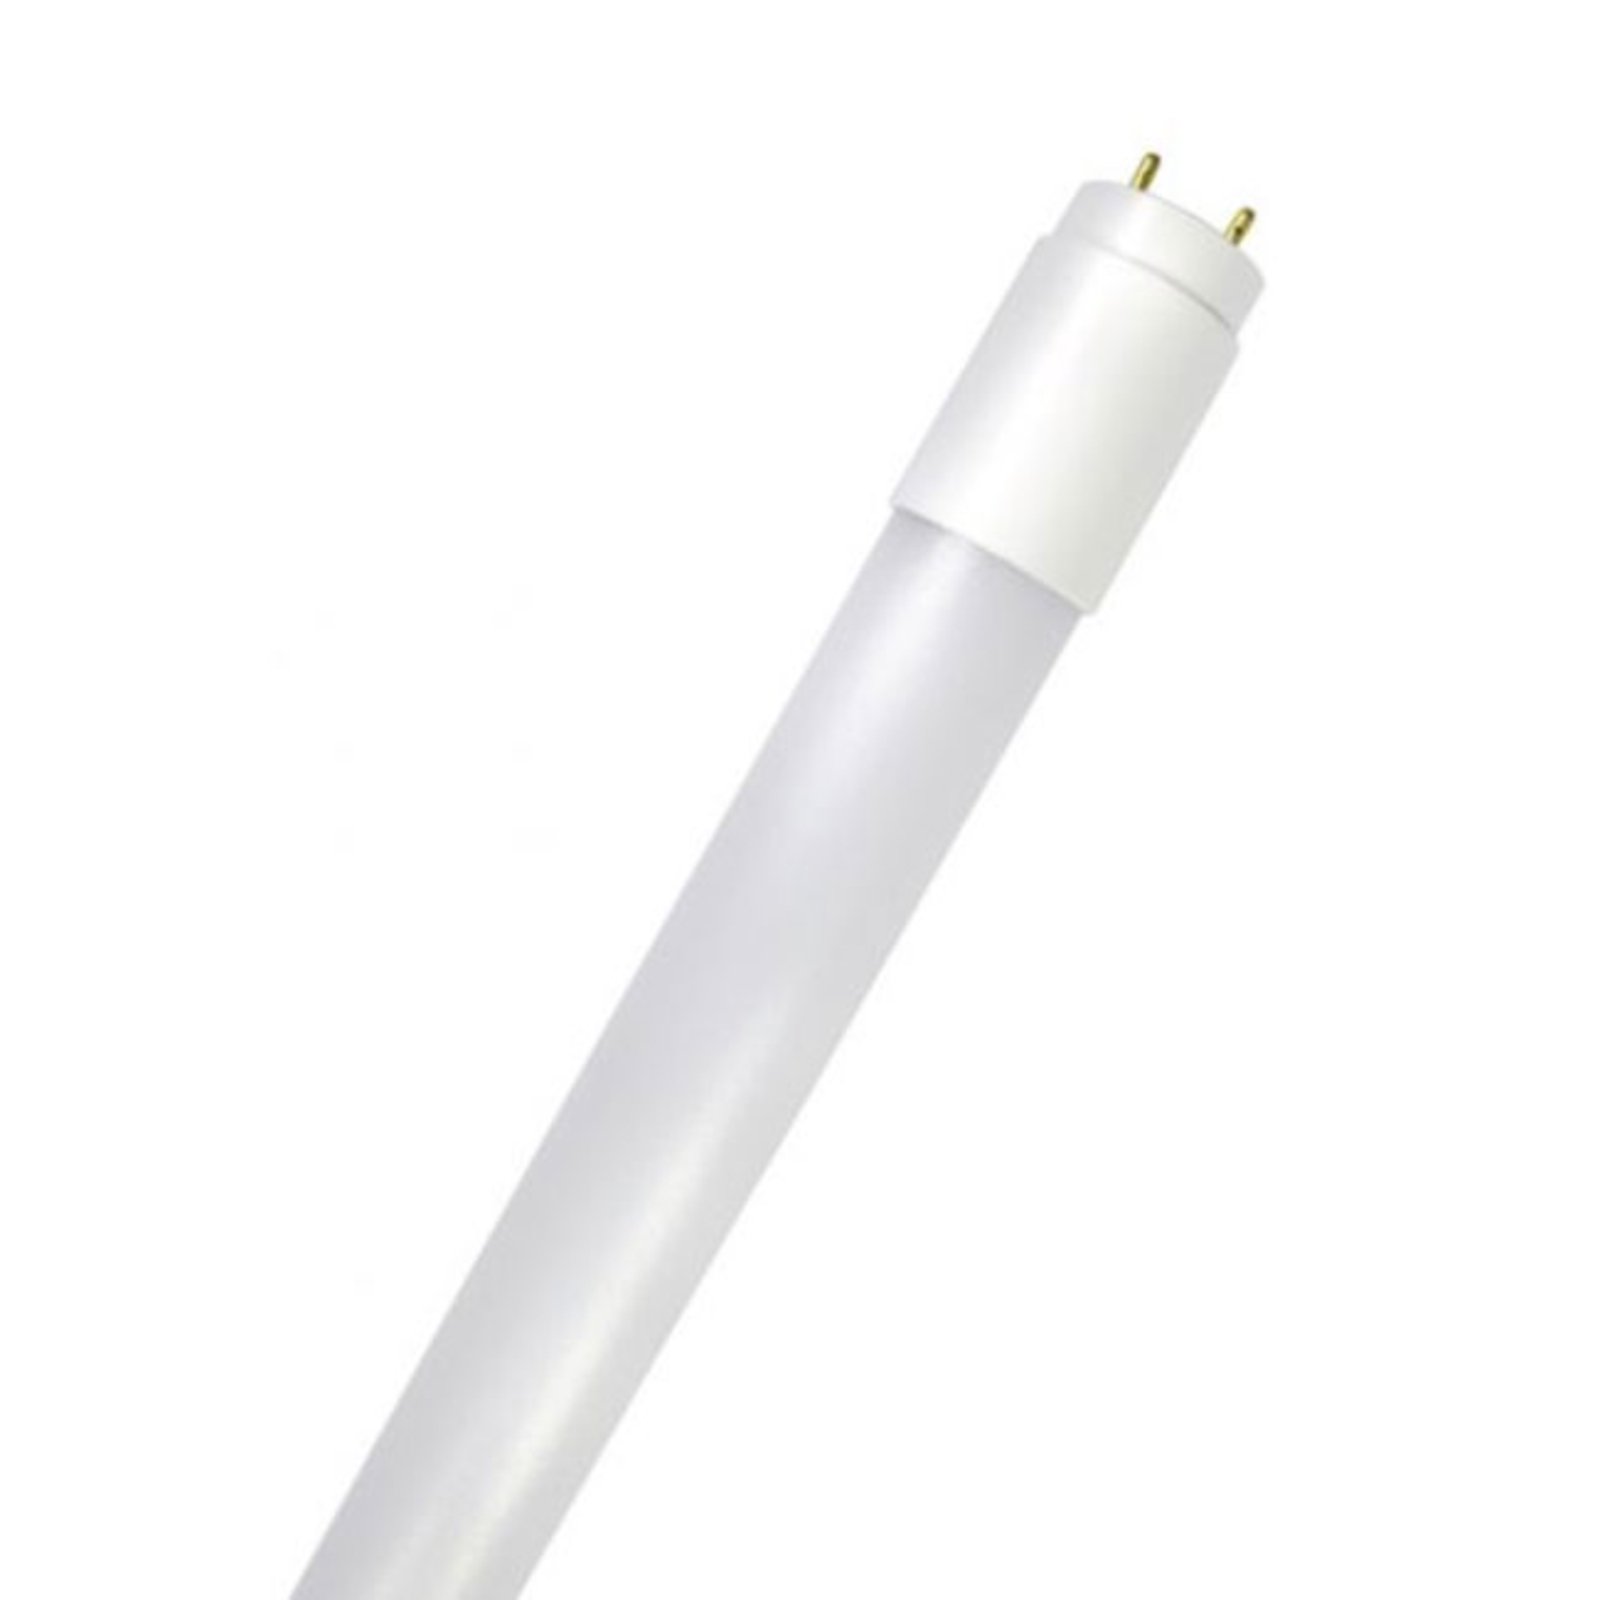 LED tube bulb GoLeaf T8 G13 full spectrum 19W 150cm